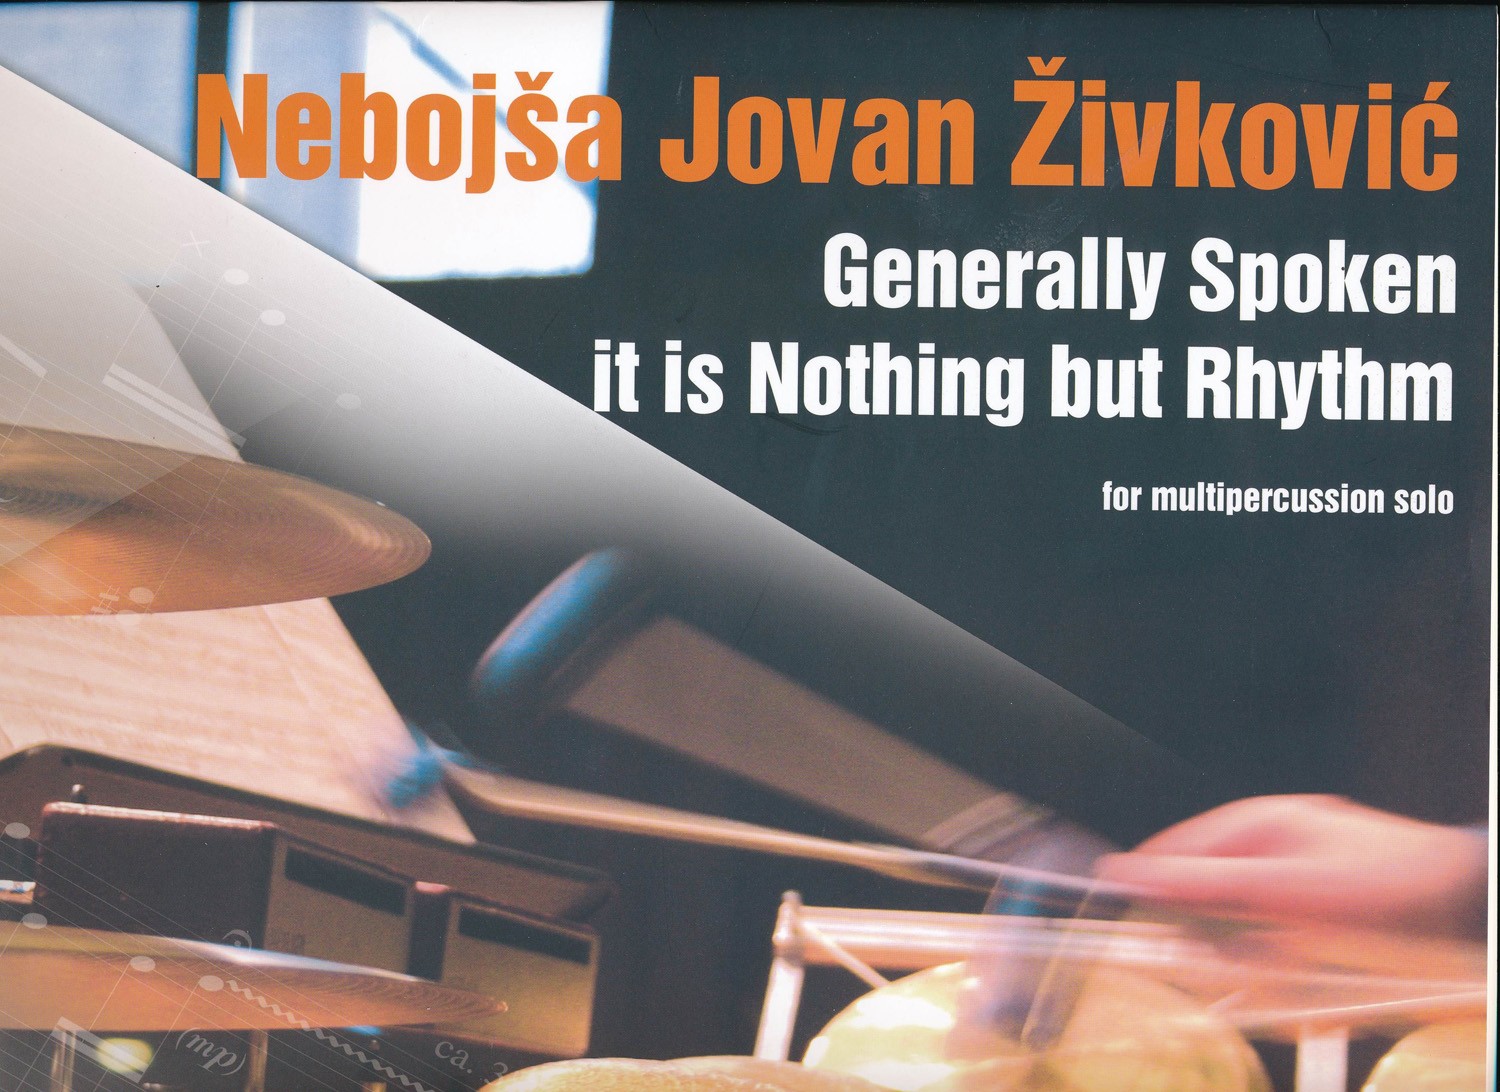 Generally Spoken It Is Nothing But Rhythm by Nebojsa Zivkovic